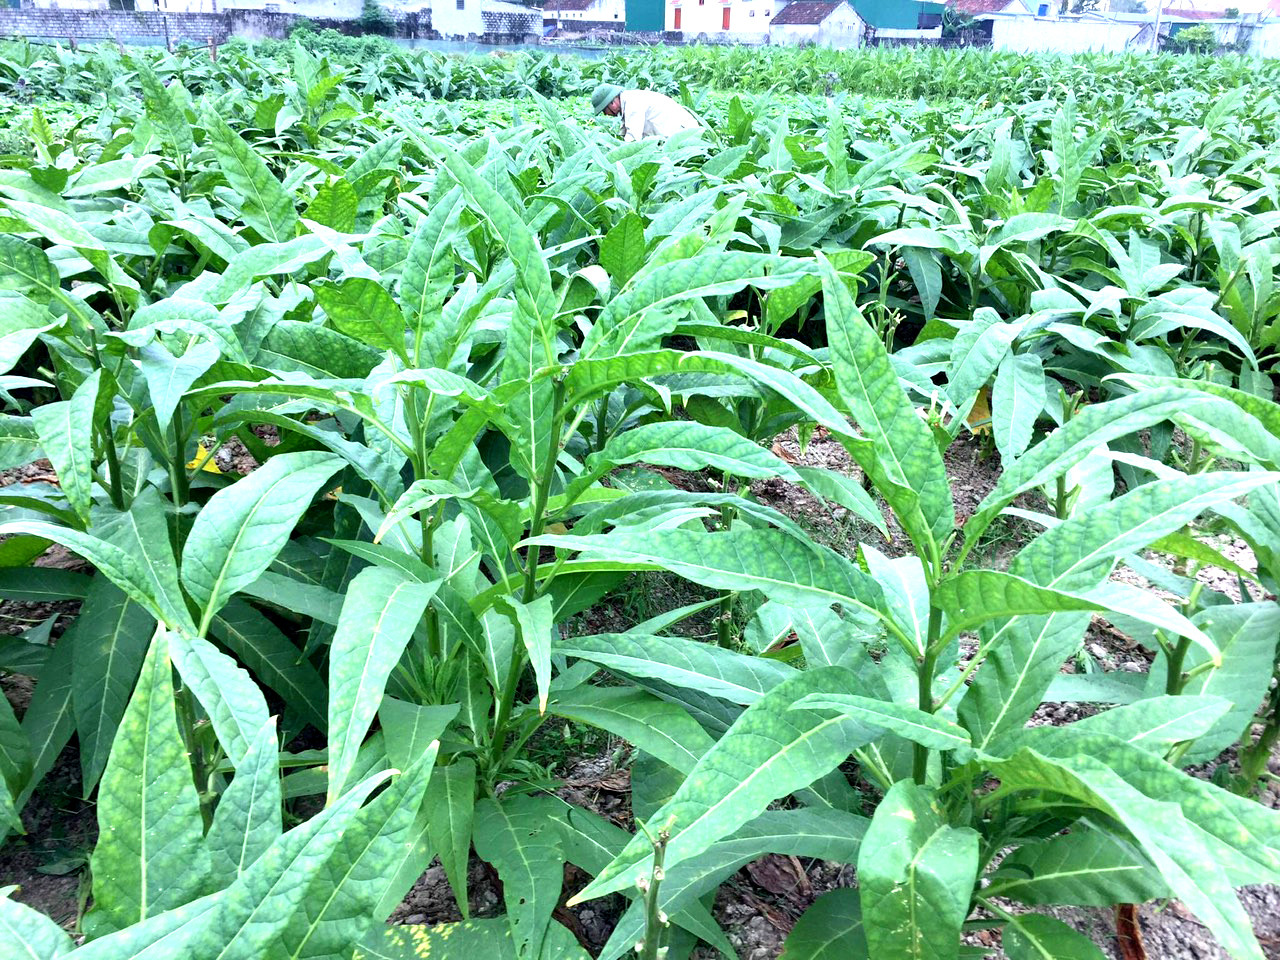 Cây thuốc lào hay còn gọi là tương tư thảo (cỏ nhớ thương) là cây trồng chủ lực, đem lại nguồn thu chính của người dân các địa phương Quỳnh Dị (TX.Hoàng Mai), Diễn Hạnh (Diễn Châu). Ảnh: Thanh Phúc